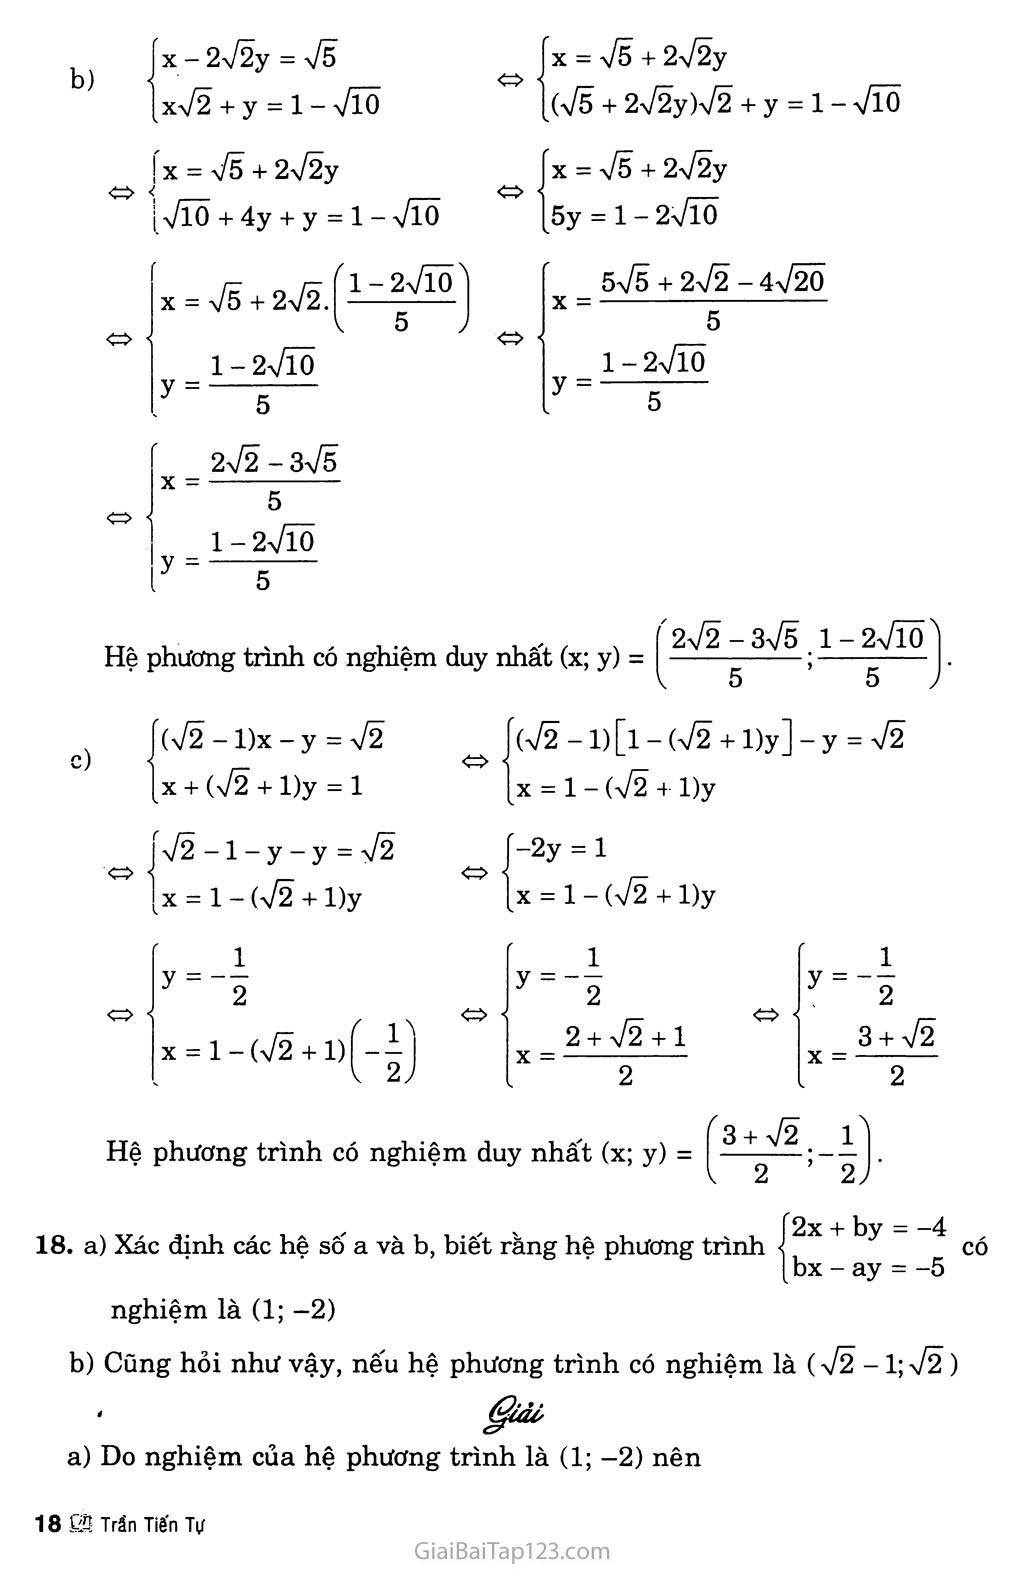 Bài 3. Giải hệ phương trình bằng phương pháp thay thế trang 7